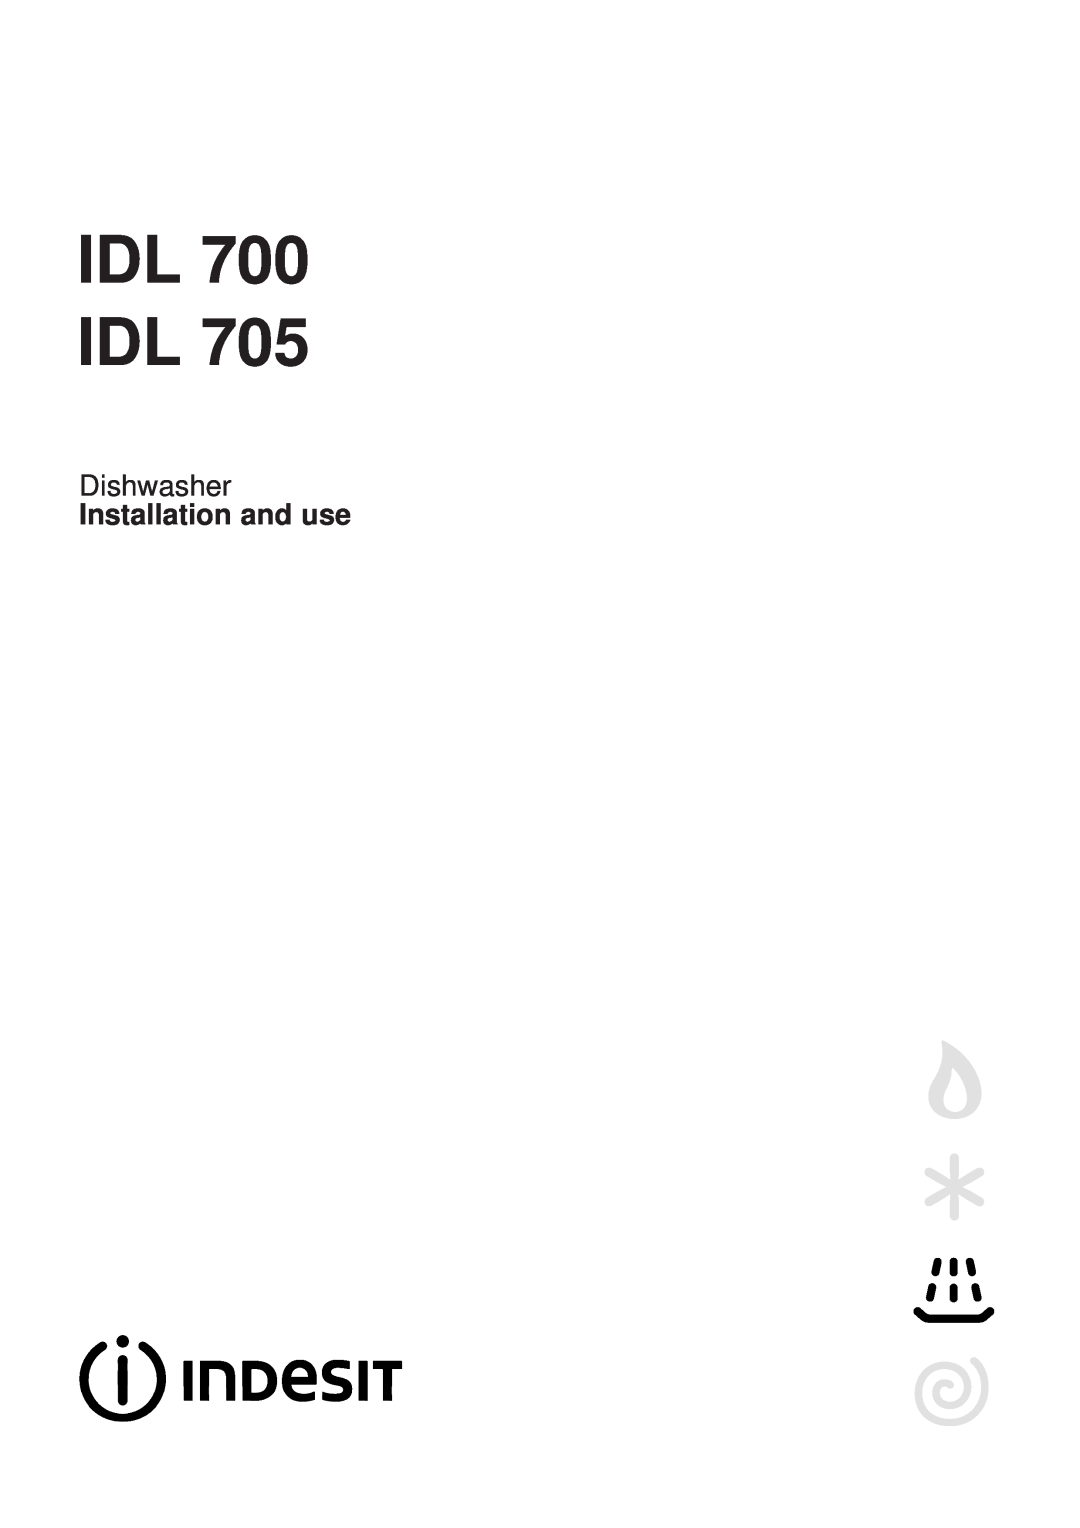 Indesit IDL 705 manual IDL 700 IDL, Dishwasher, Installation and use 